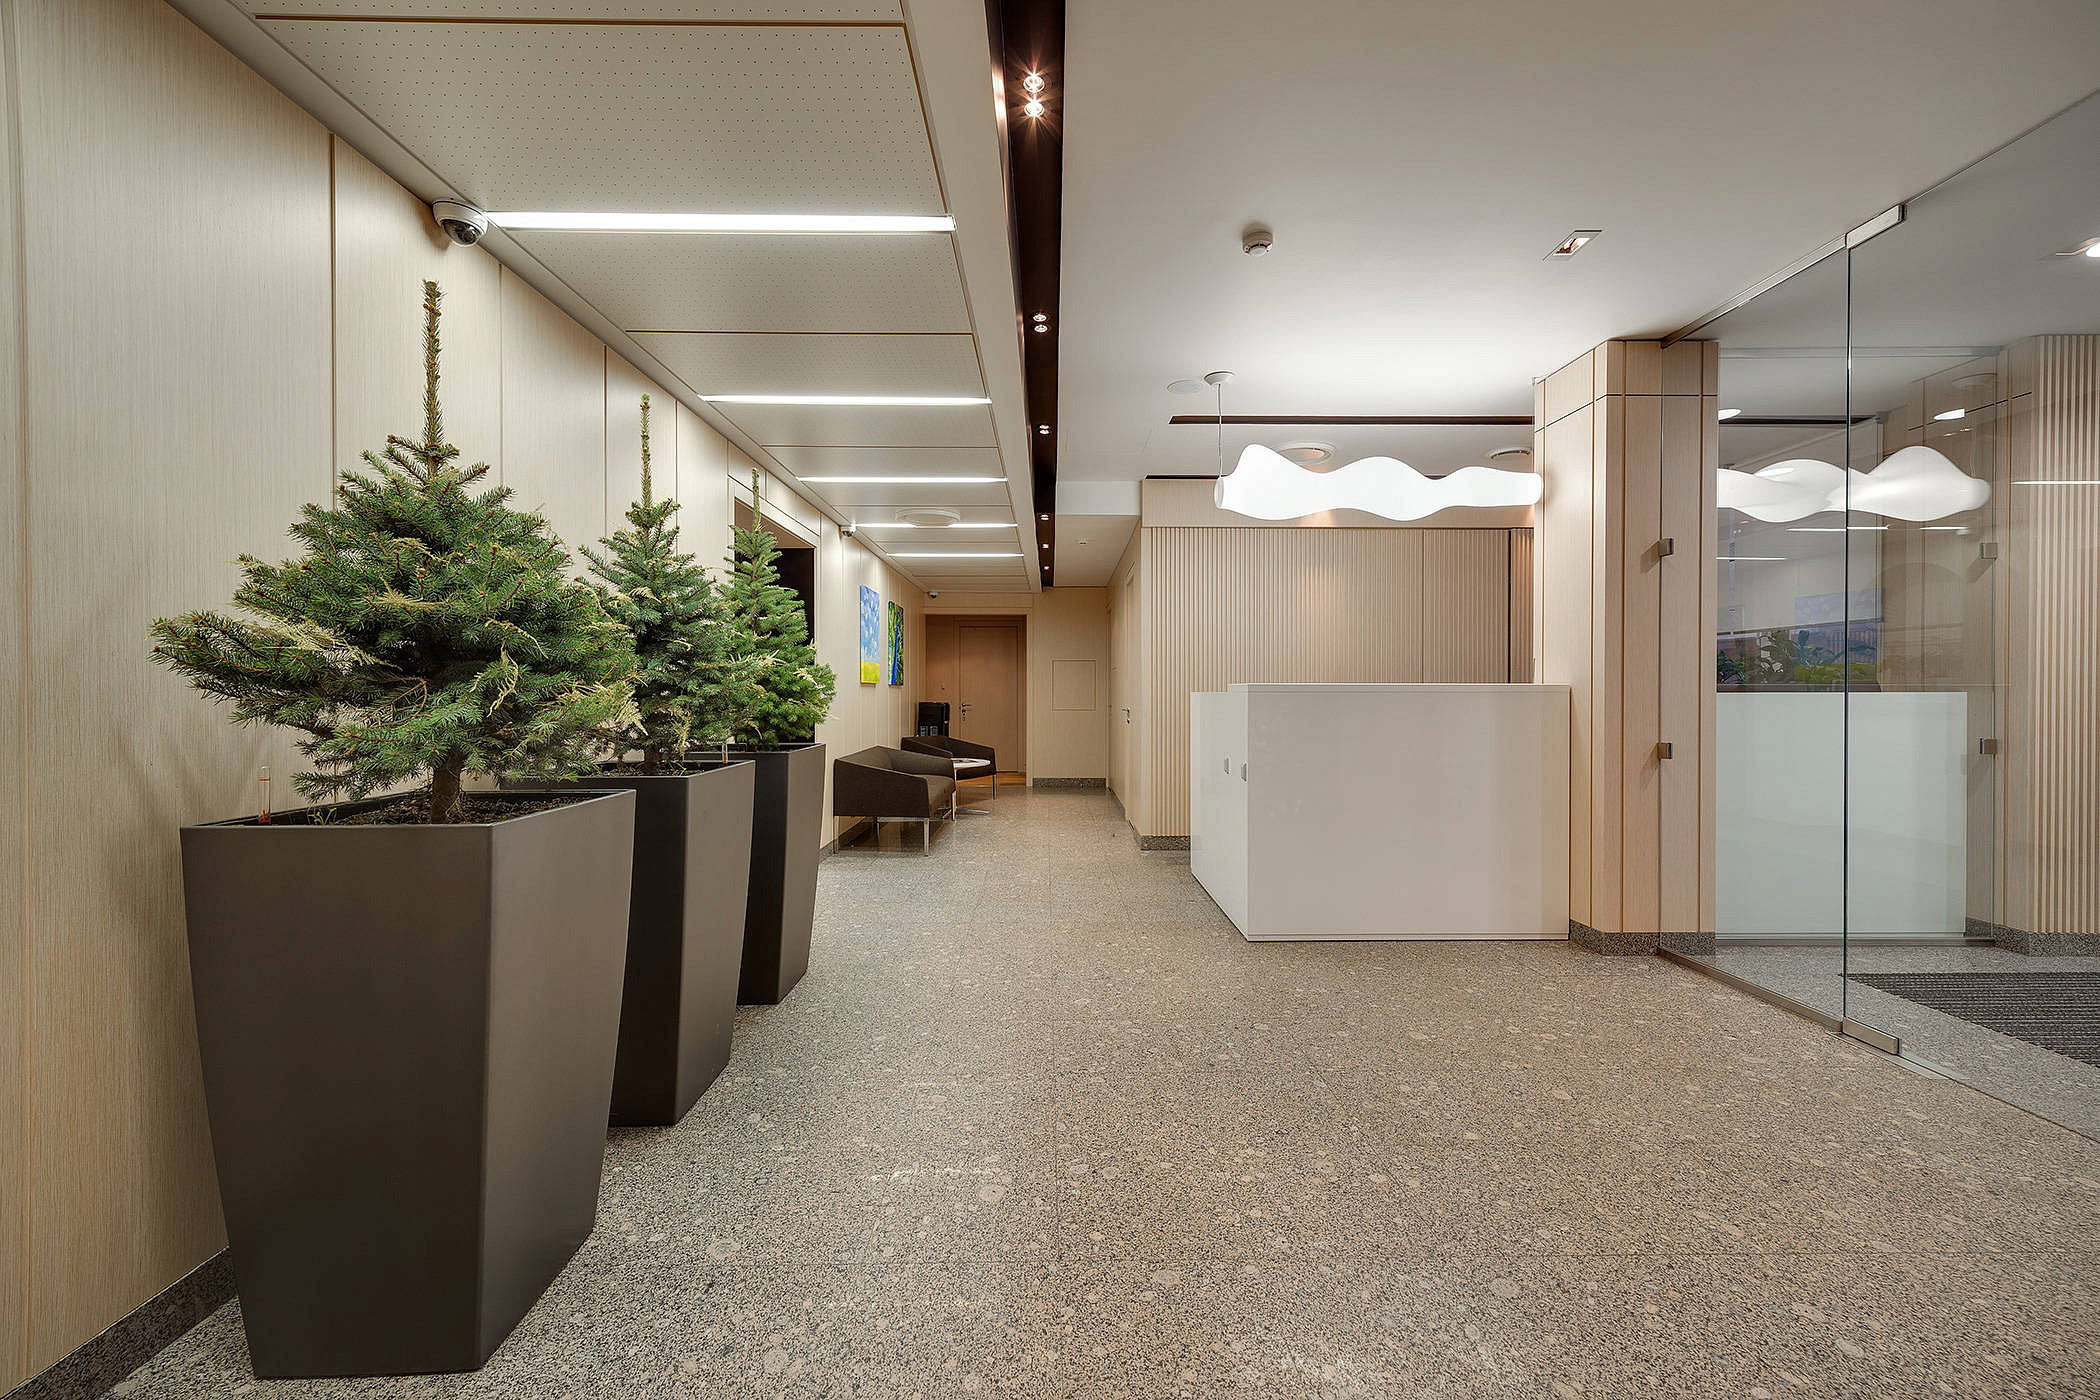 17-этажный офисный центр построят в районе Филевский Парк